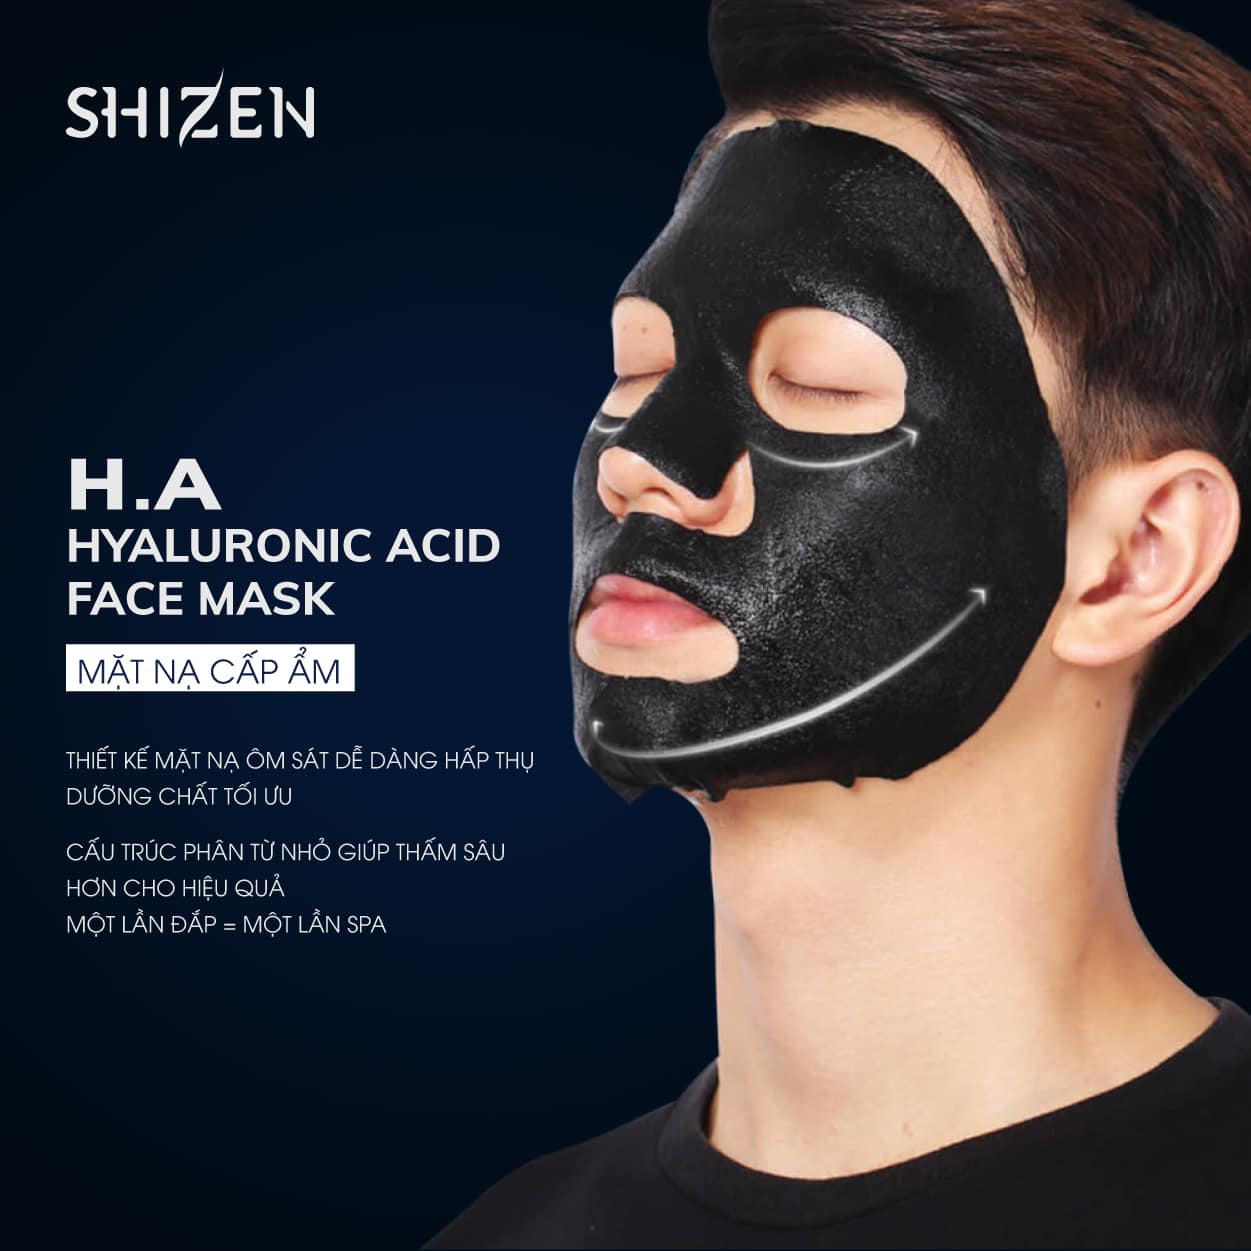 Mặt nạ Shizen có công dụng cấp ẩm, khắc phục tình trạng sạm da, làm sáng da,...